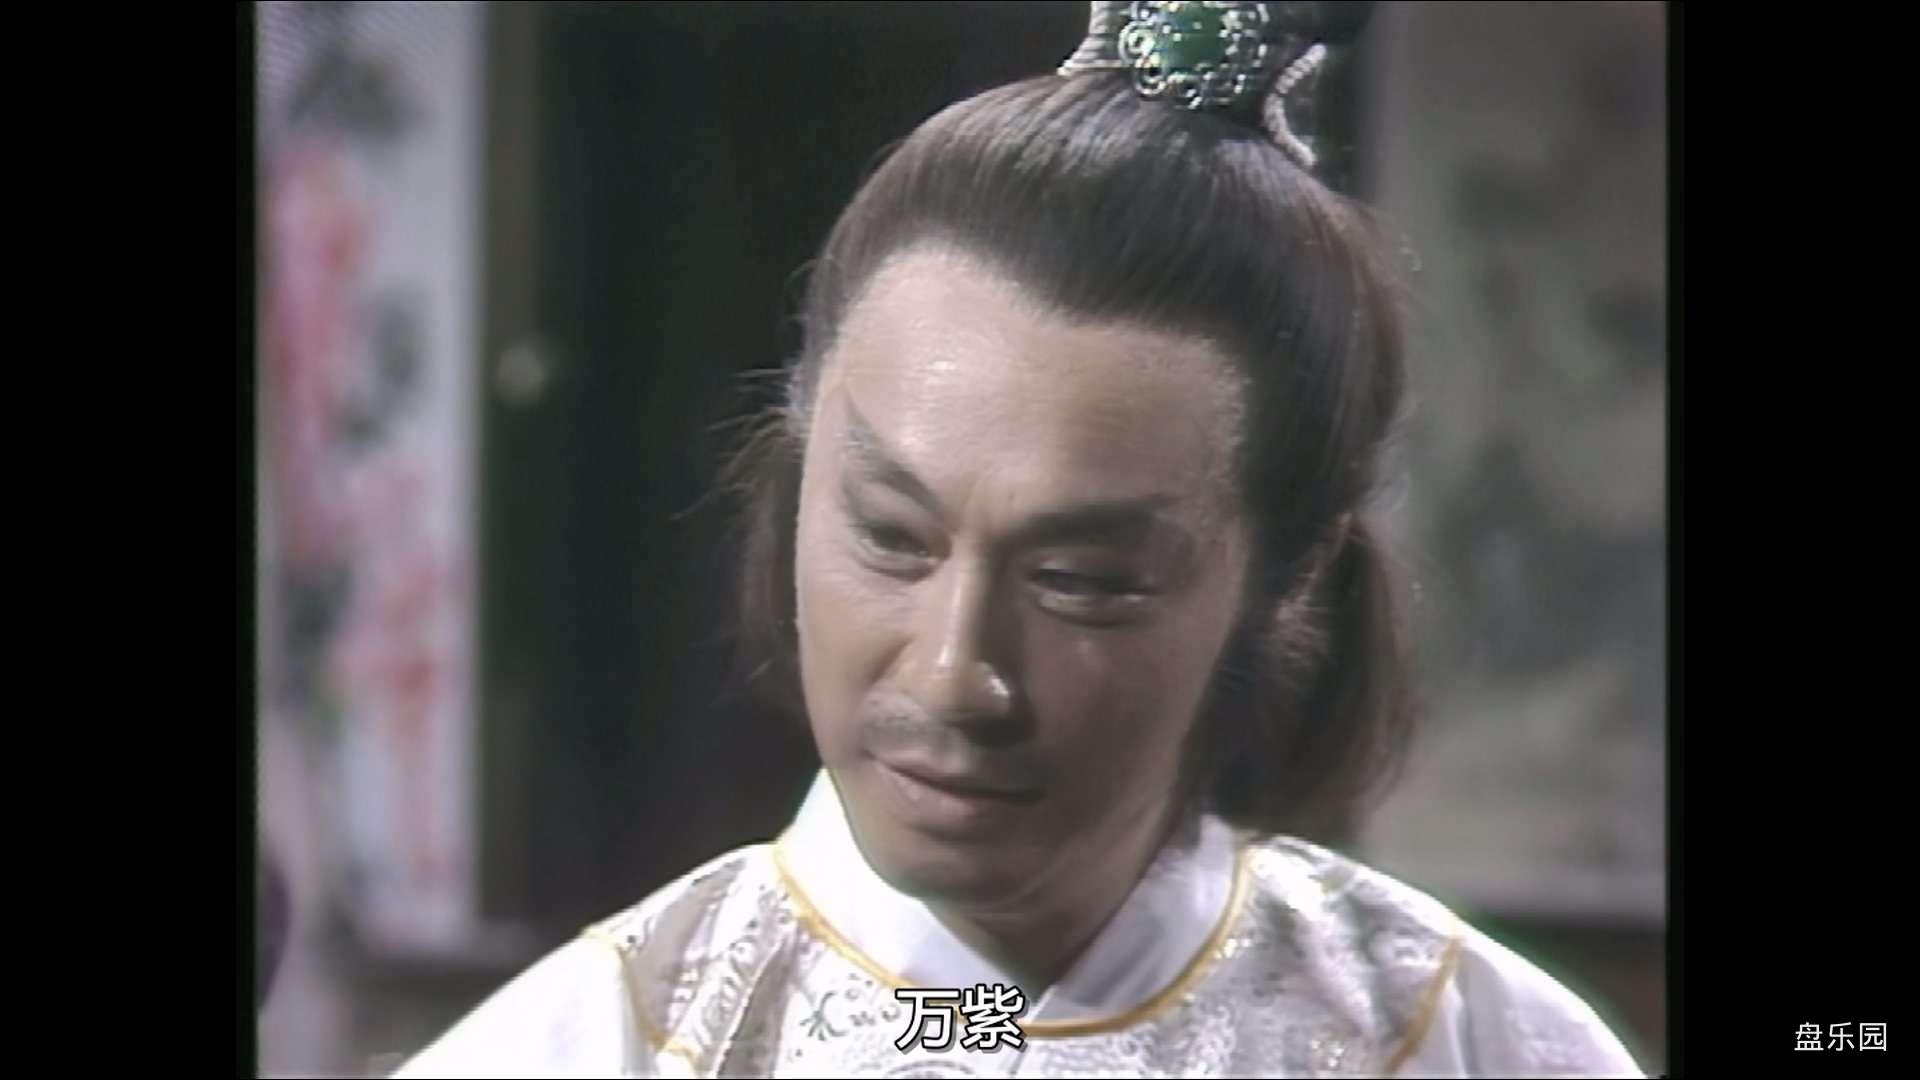 [游侠张三丰].Tai.Chi.Master.1981.S02.Ep06.myTVSUPER.WEB-DL.1080p.HEVC.AAC-CMCTV..jpg